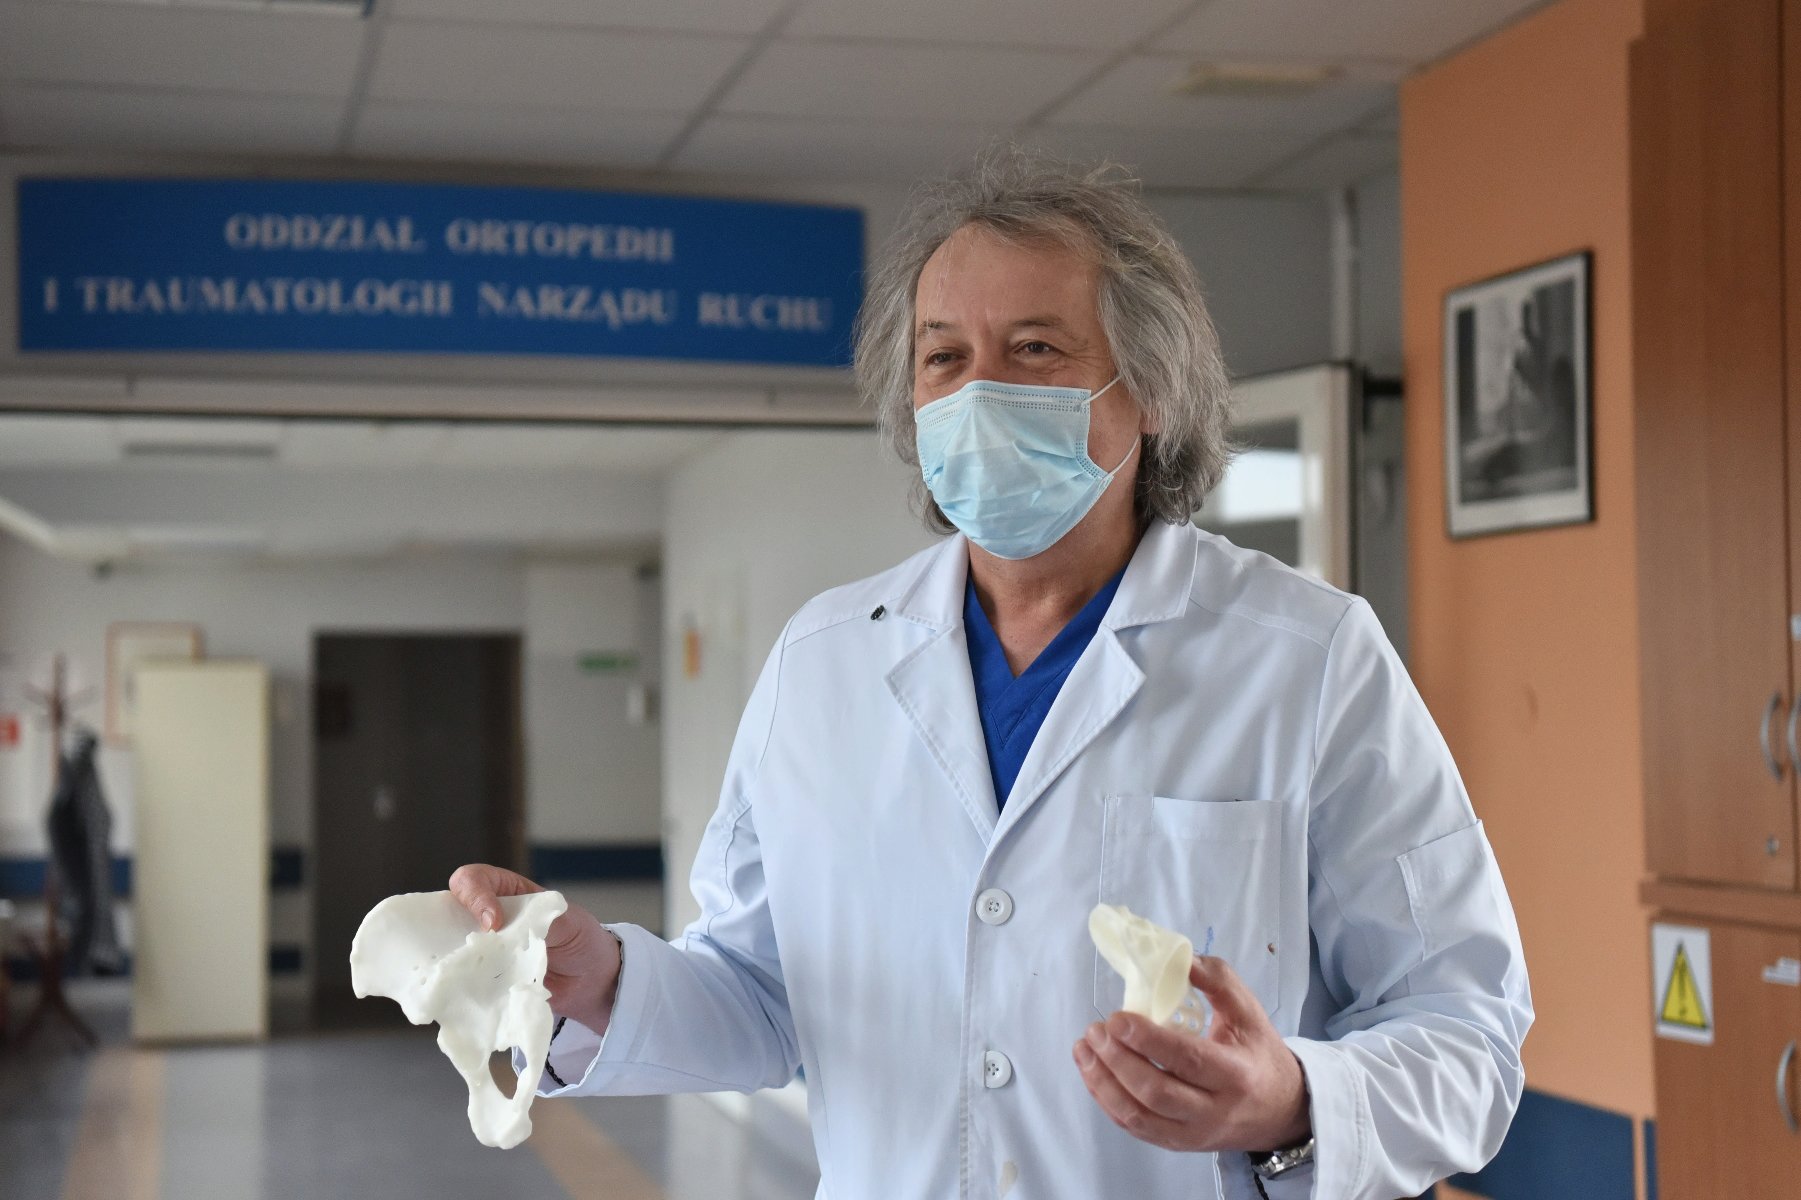 Na zdjęciu lekarz w fartuchu, trzymający modele wydrukowane na drukarce 3D - grafika artykułu